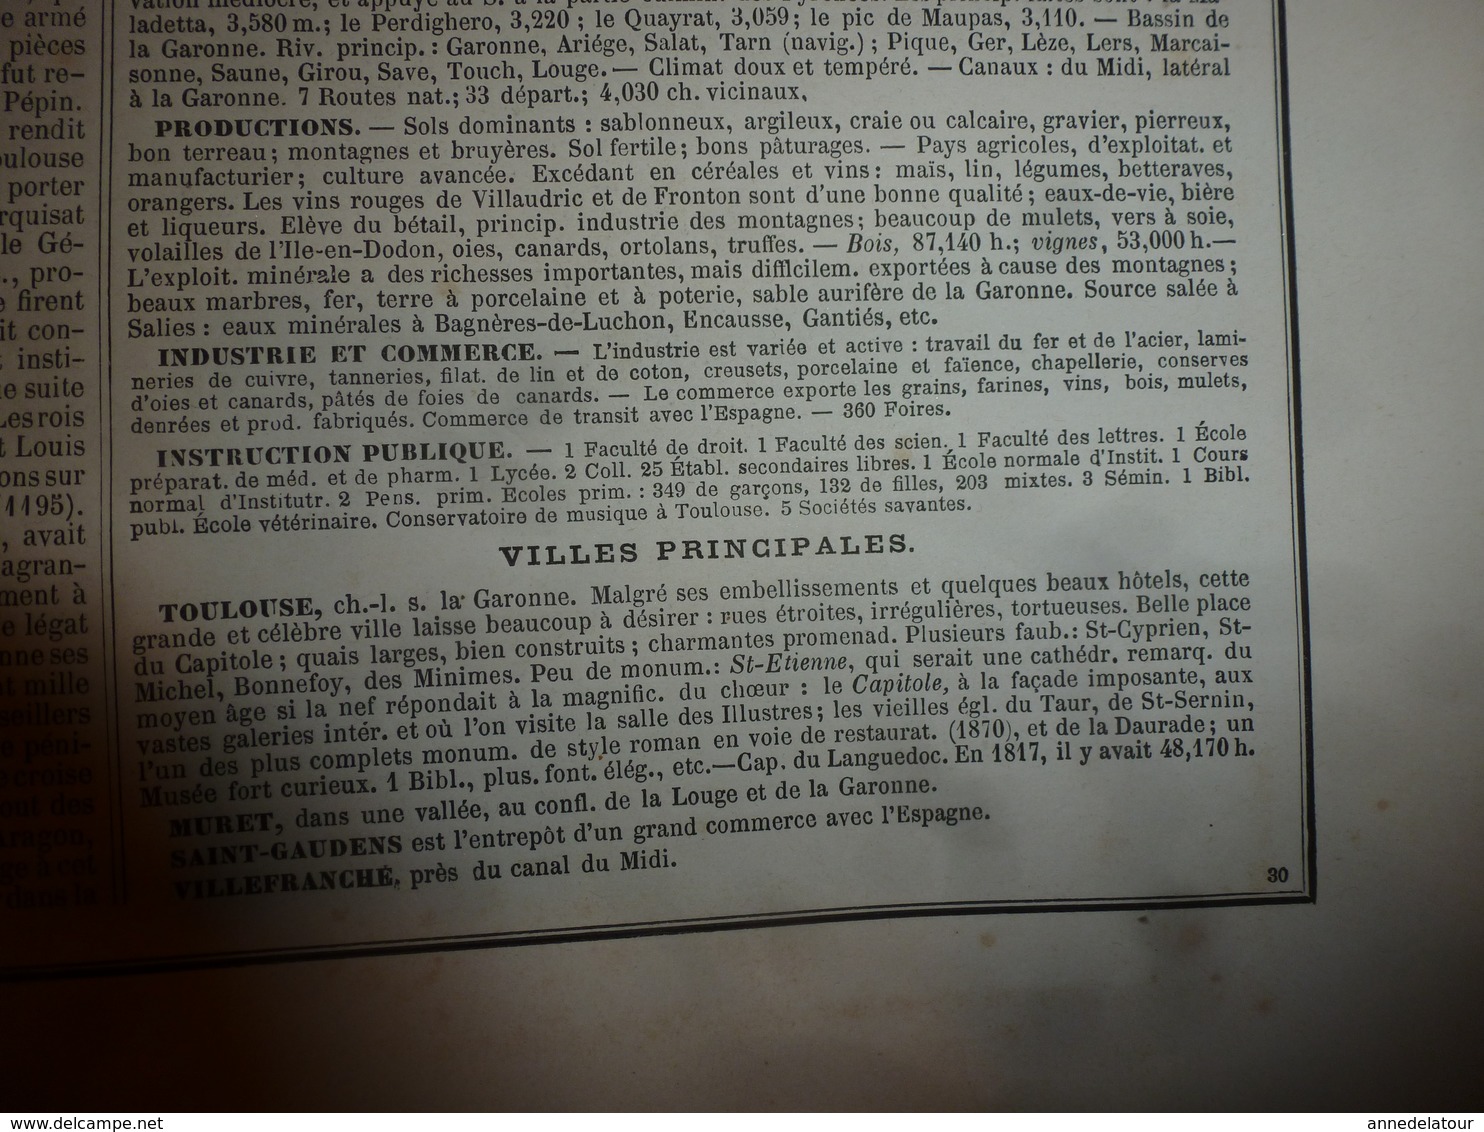 1880 HAUTE GARONNE (Toulouse,Muret,St-Gaudens,etc) Carte Géographique-Descriptive:grav. taille douce-Migeon,géographe.